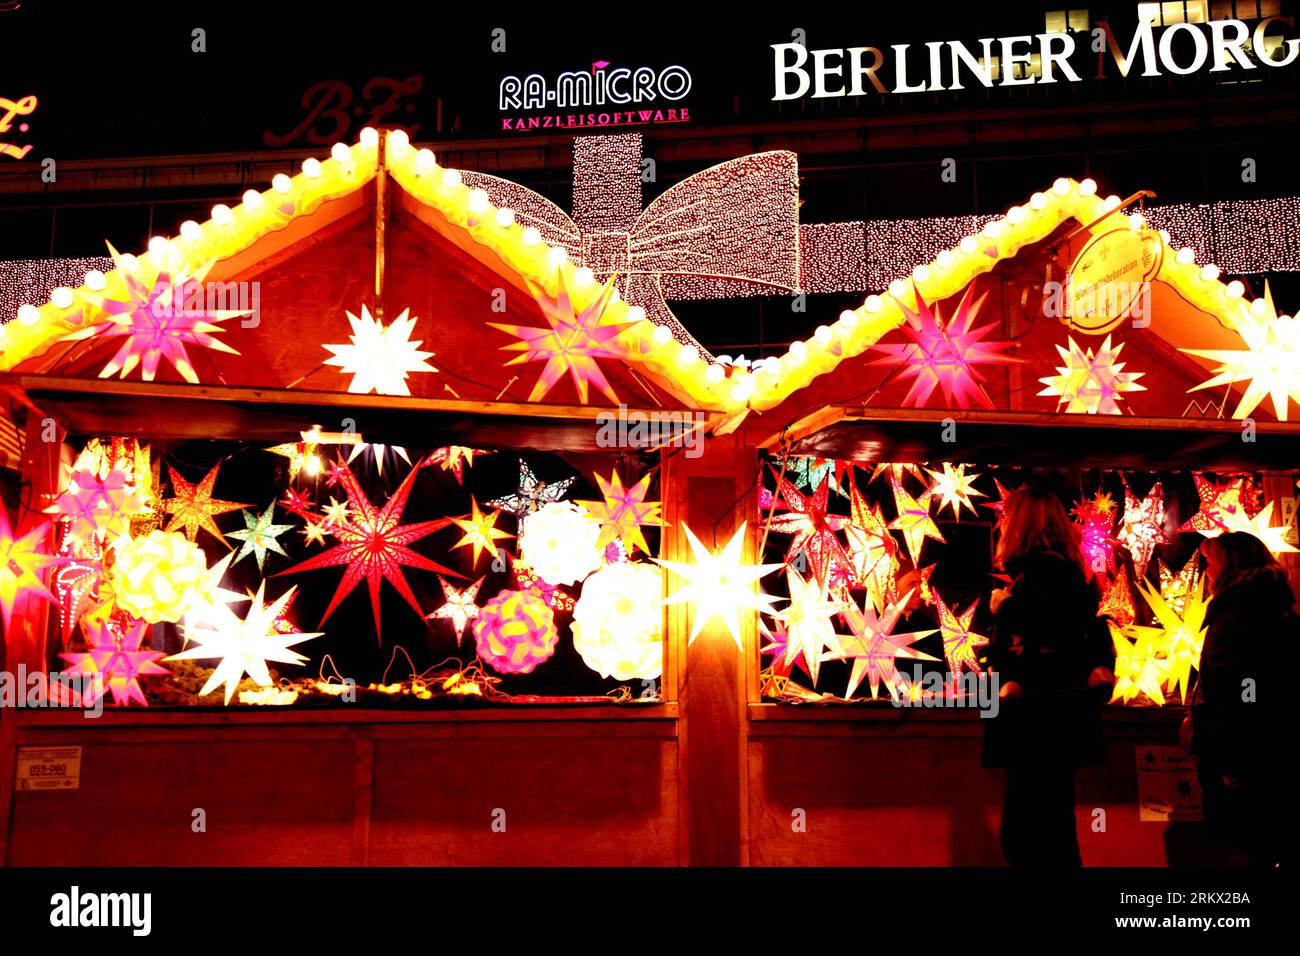 Bildnummer : 58859559 Datum : 30.11.2012 Copyright : imago/Xinhua BERLIN, 30 novembre 2012 - les visiteurs apprécient les lampes fantastiques à l'intérieur du marché de Noël brillamment illuminé, à Berlin, le 30 novembre 2012. Pour saluer l'avènement de Noël, de nombreuses sections importantes de la ville sont illuminées le soir, présentant une atmosphère festive joyeuse.(Xinhua/Pan Xu)(zyw) ALLEMAGNE-BERLIN-MARCHÉ DE NOËL PUBLICATIONxNOTxINxCHN Gesellschaft Weihnachten Weihnachtsmarkt xas x0x 2012 quer premiumd 58859559 Date 30 11 2012 Copyright Imago XINHUA Berlin nov 30 2012 les visiteurs apprécient le fantastique Banque D'Images